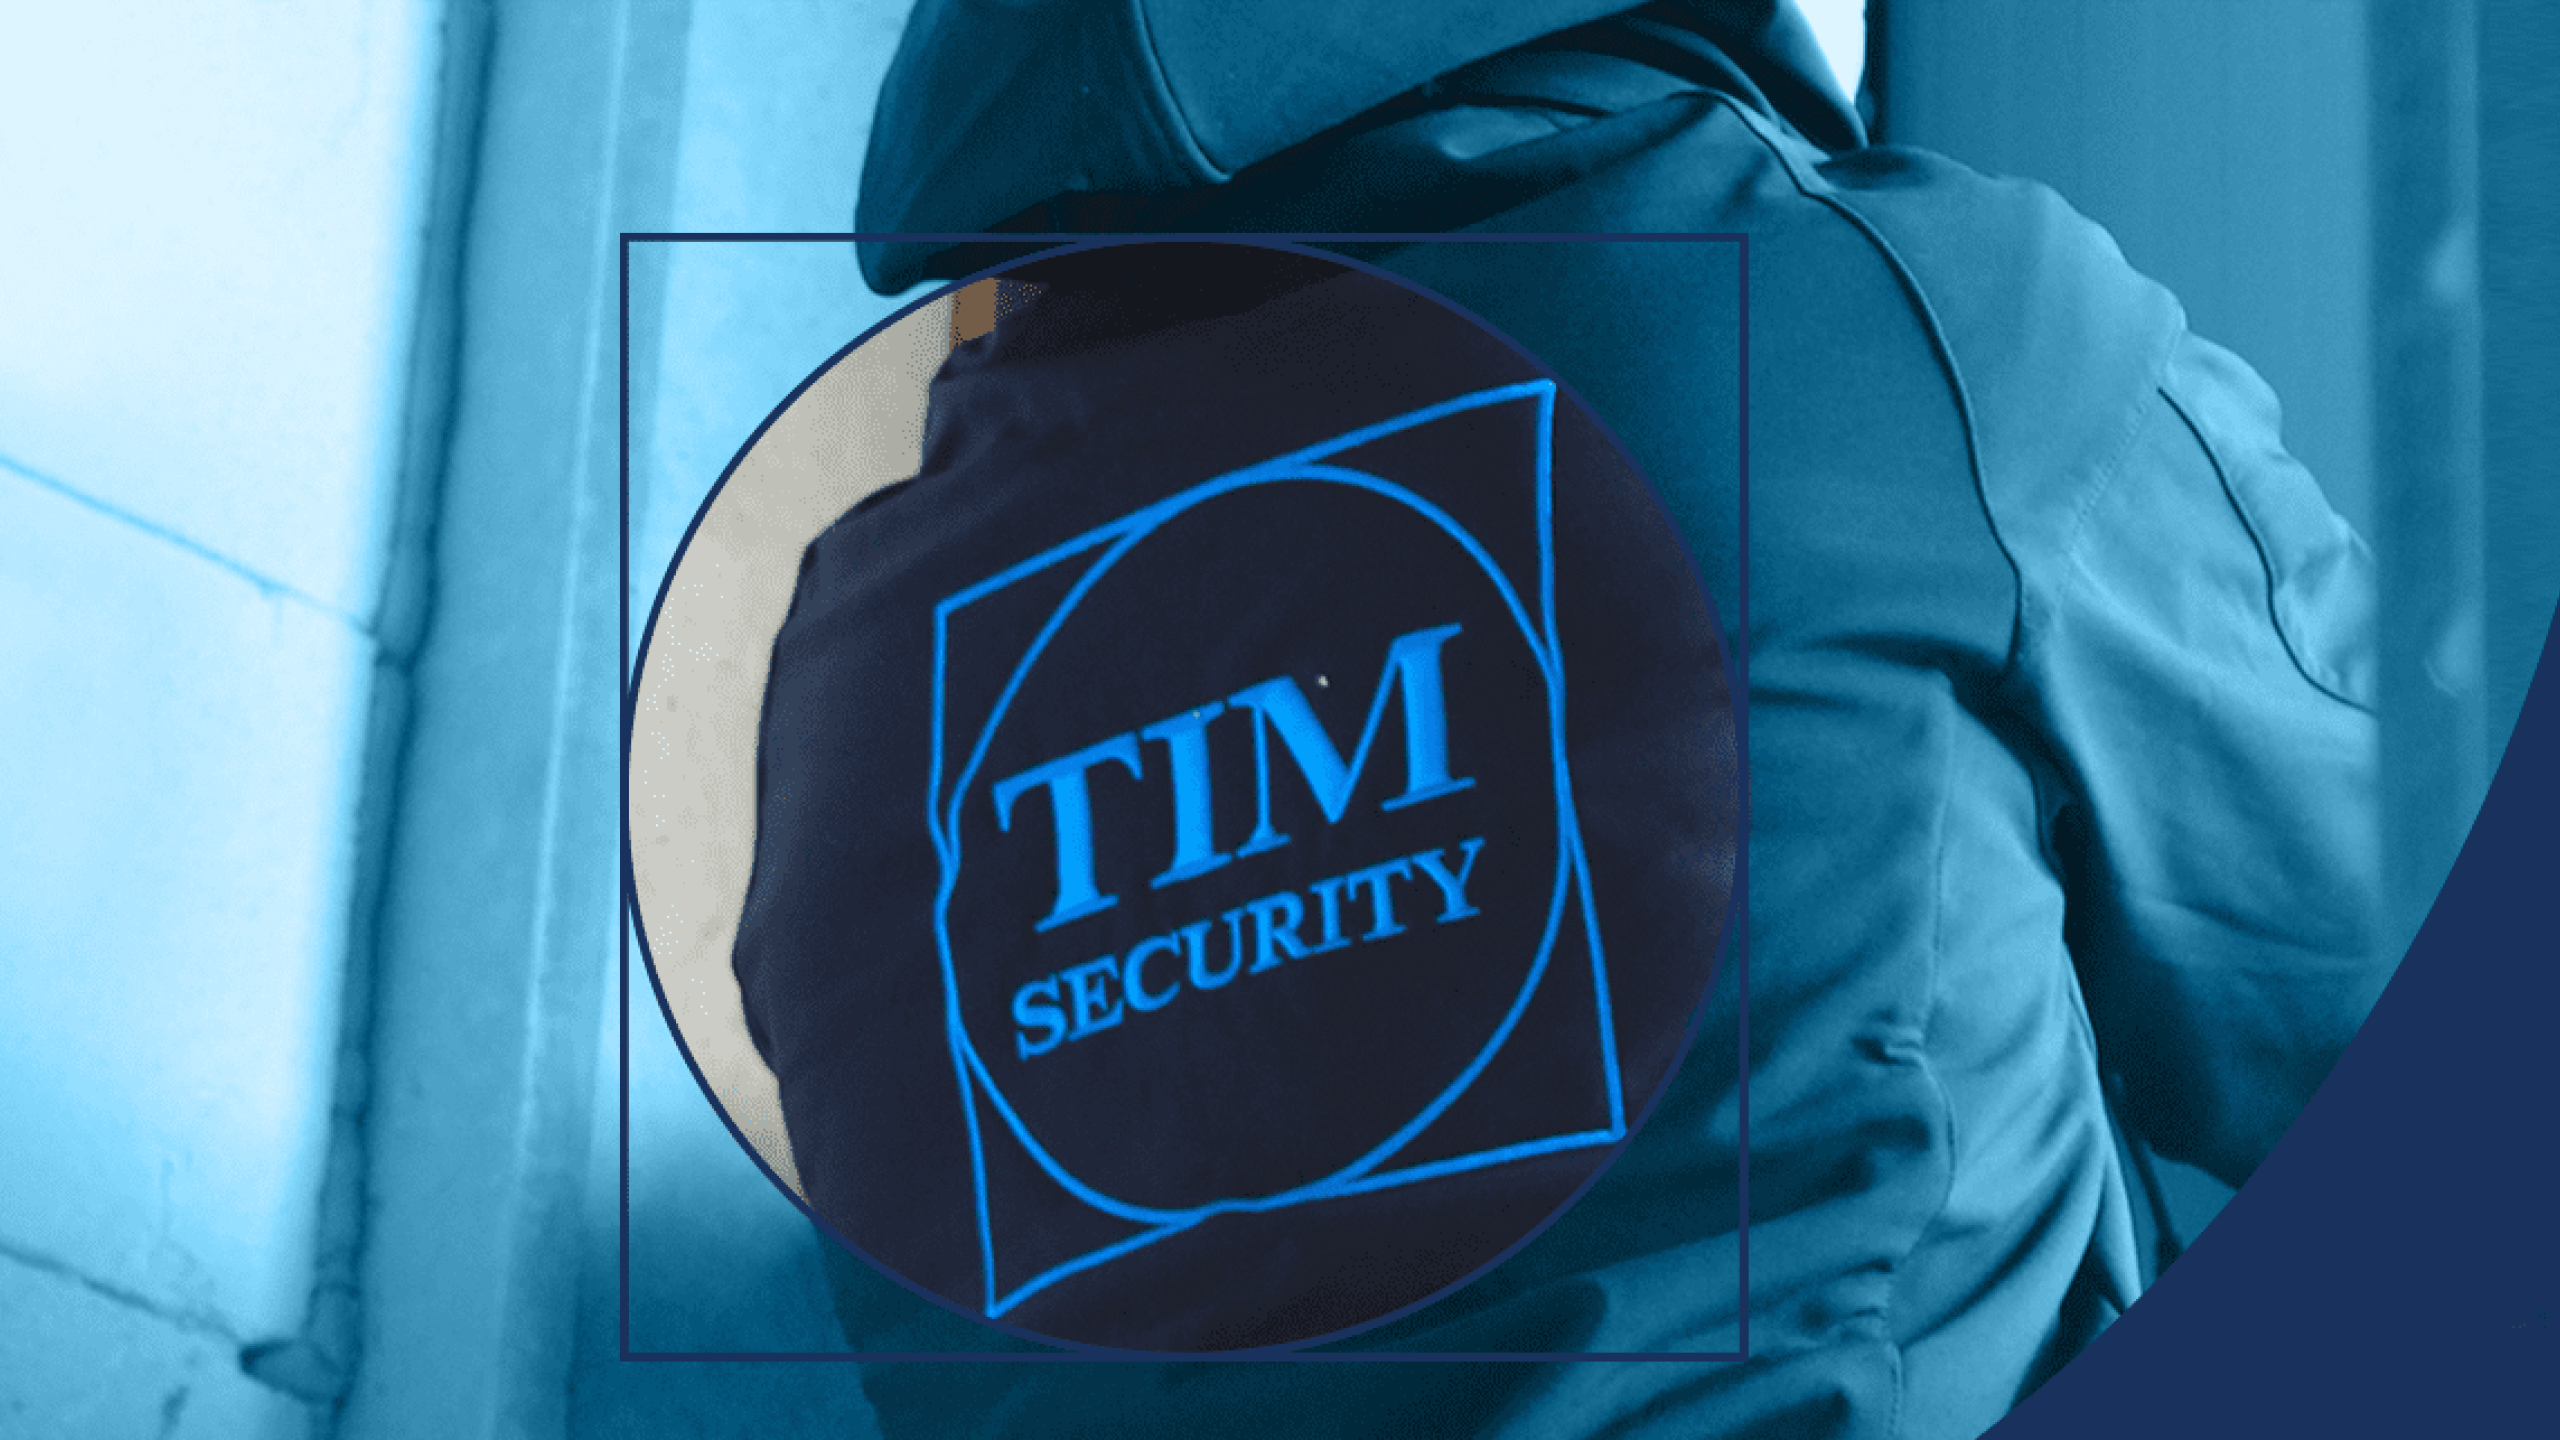 TIM Security Kontich persoon met kledij